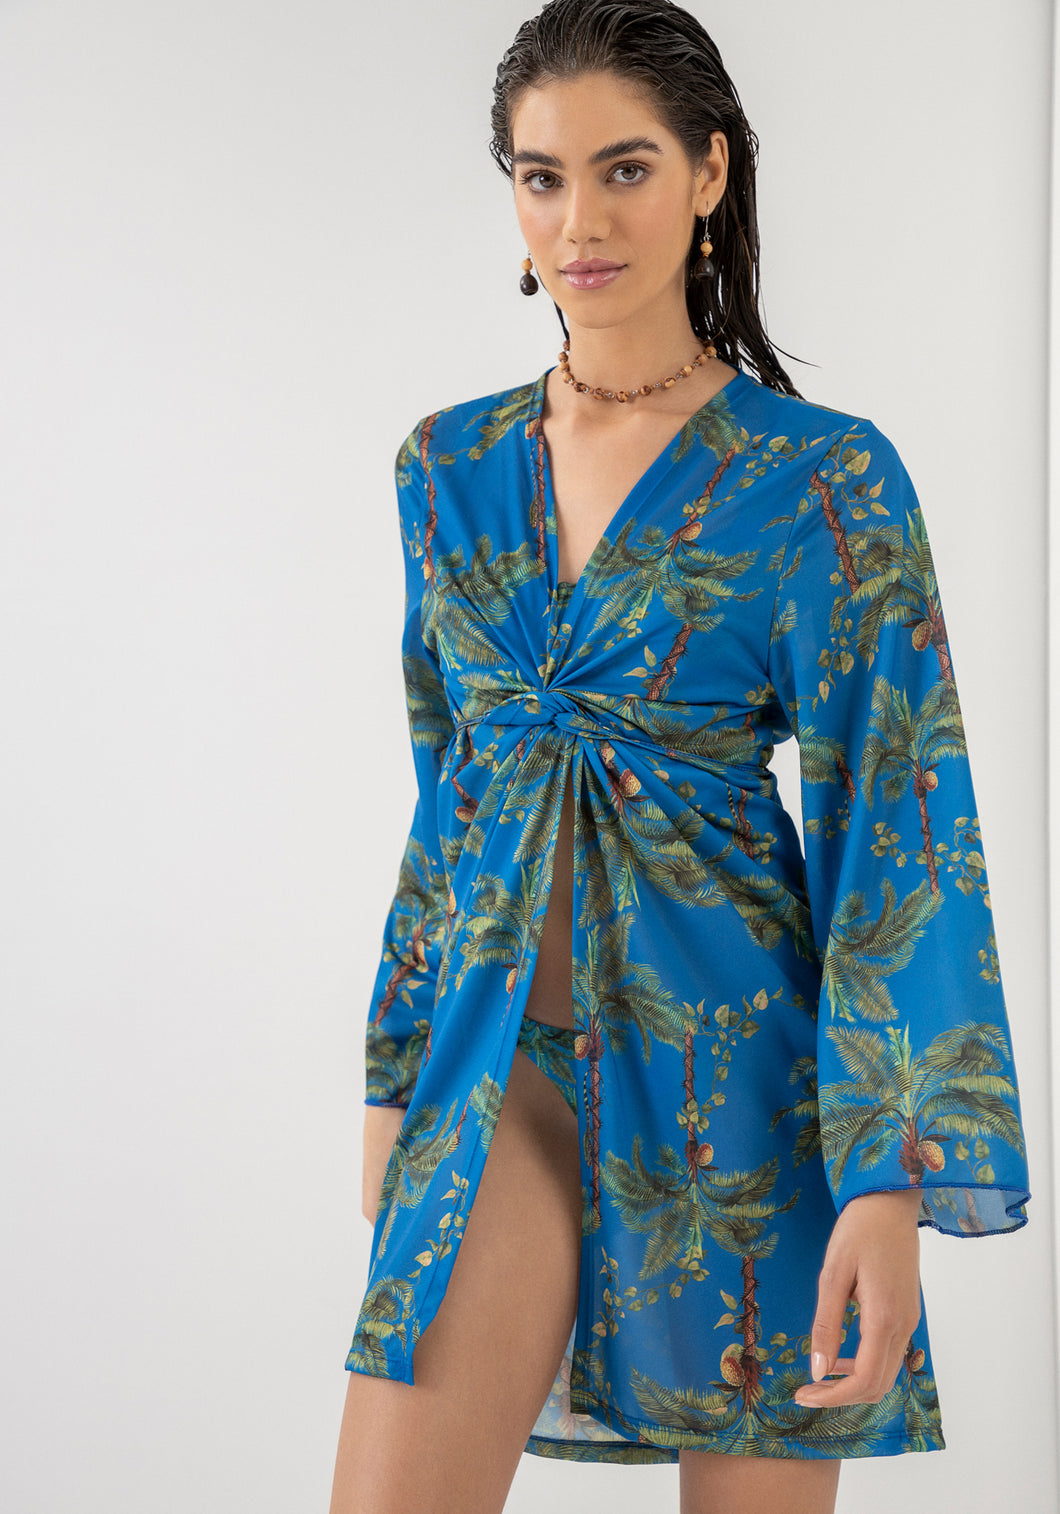 Azul Kimono/Beach Cover Up